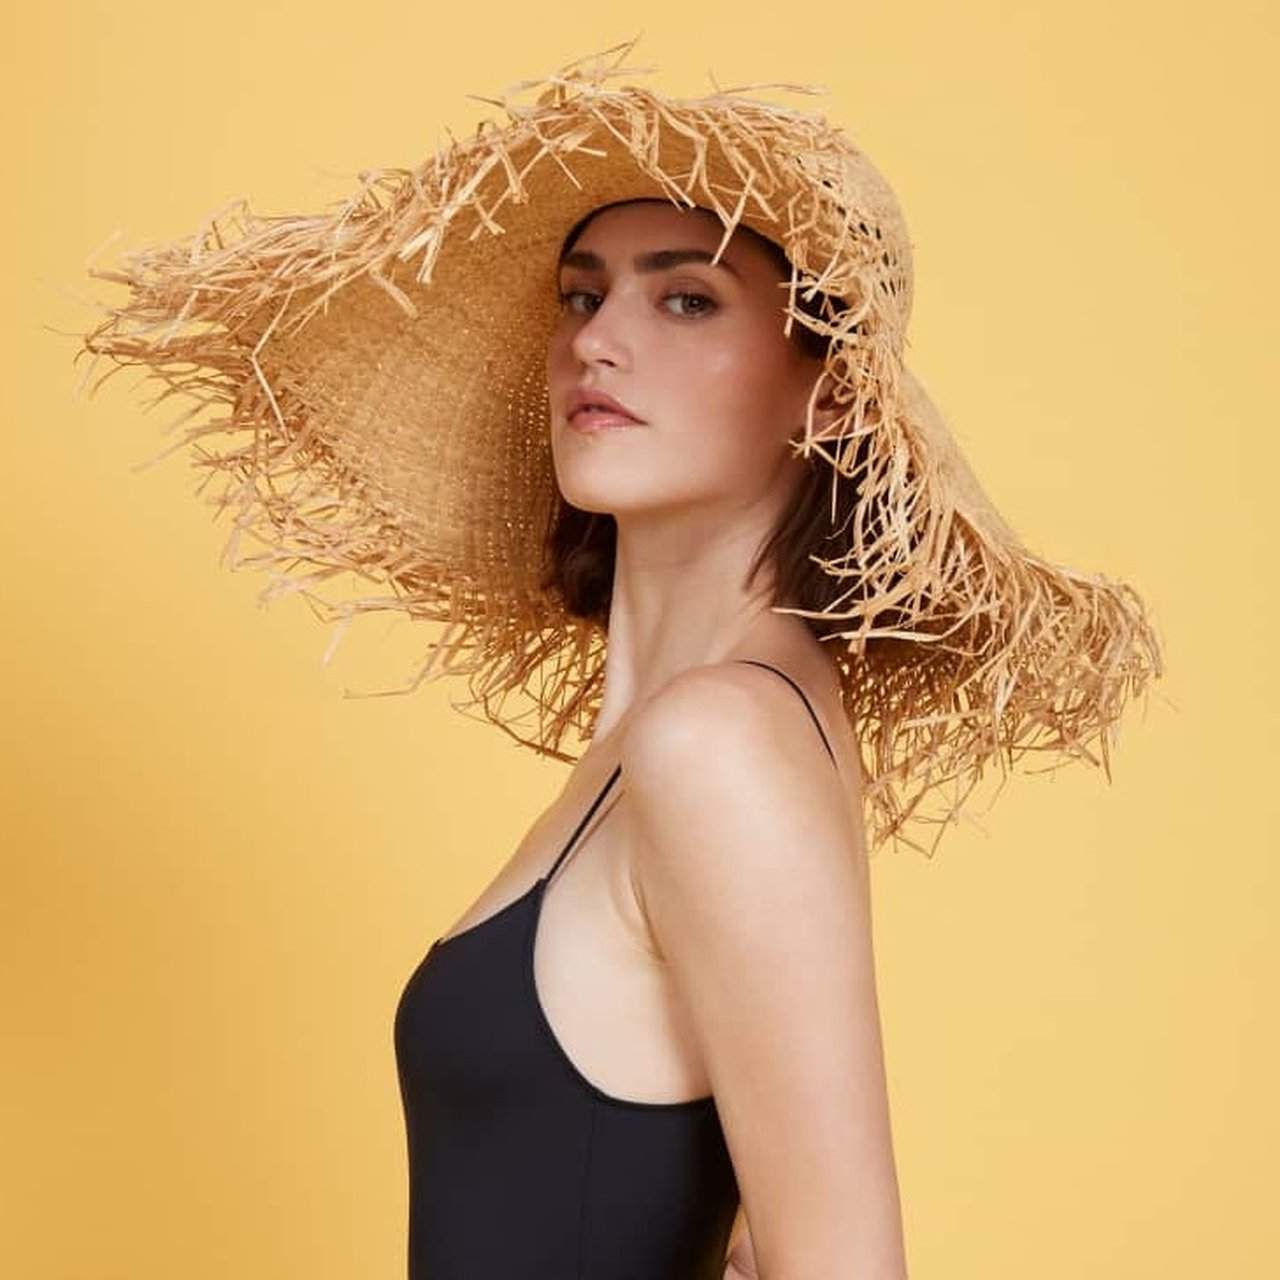 Halmhat til kvinder modetrends sommer 2019 tilbehør outfit ideer